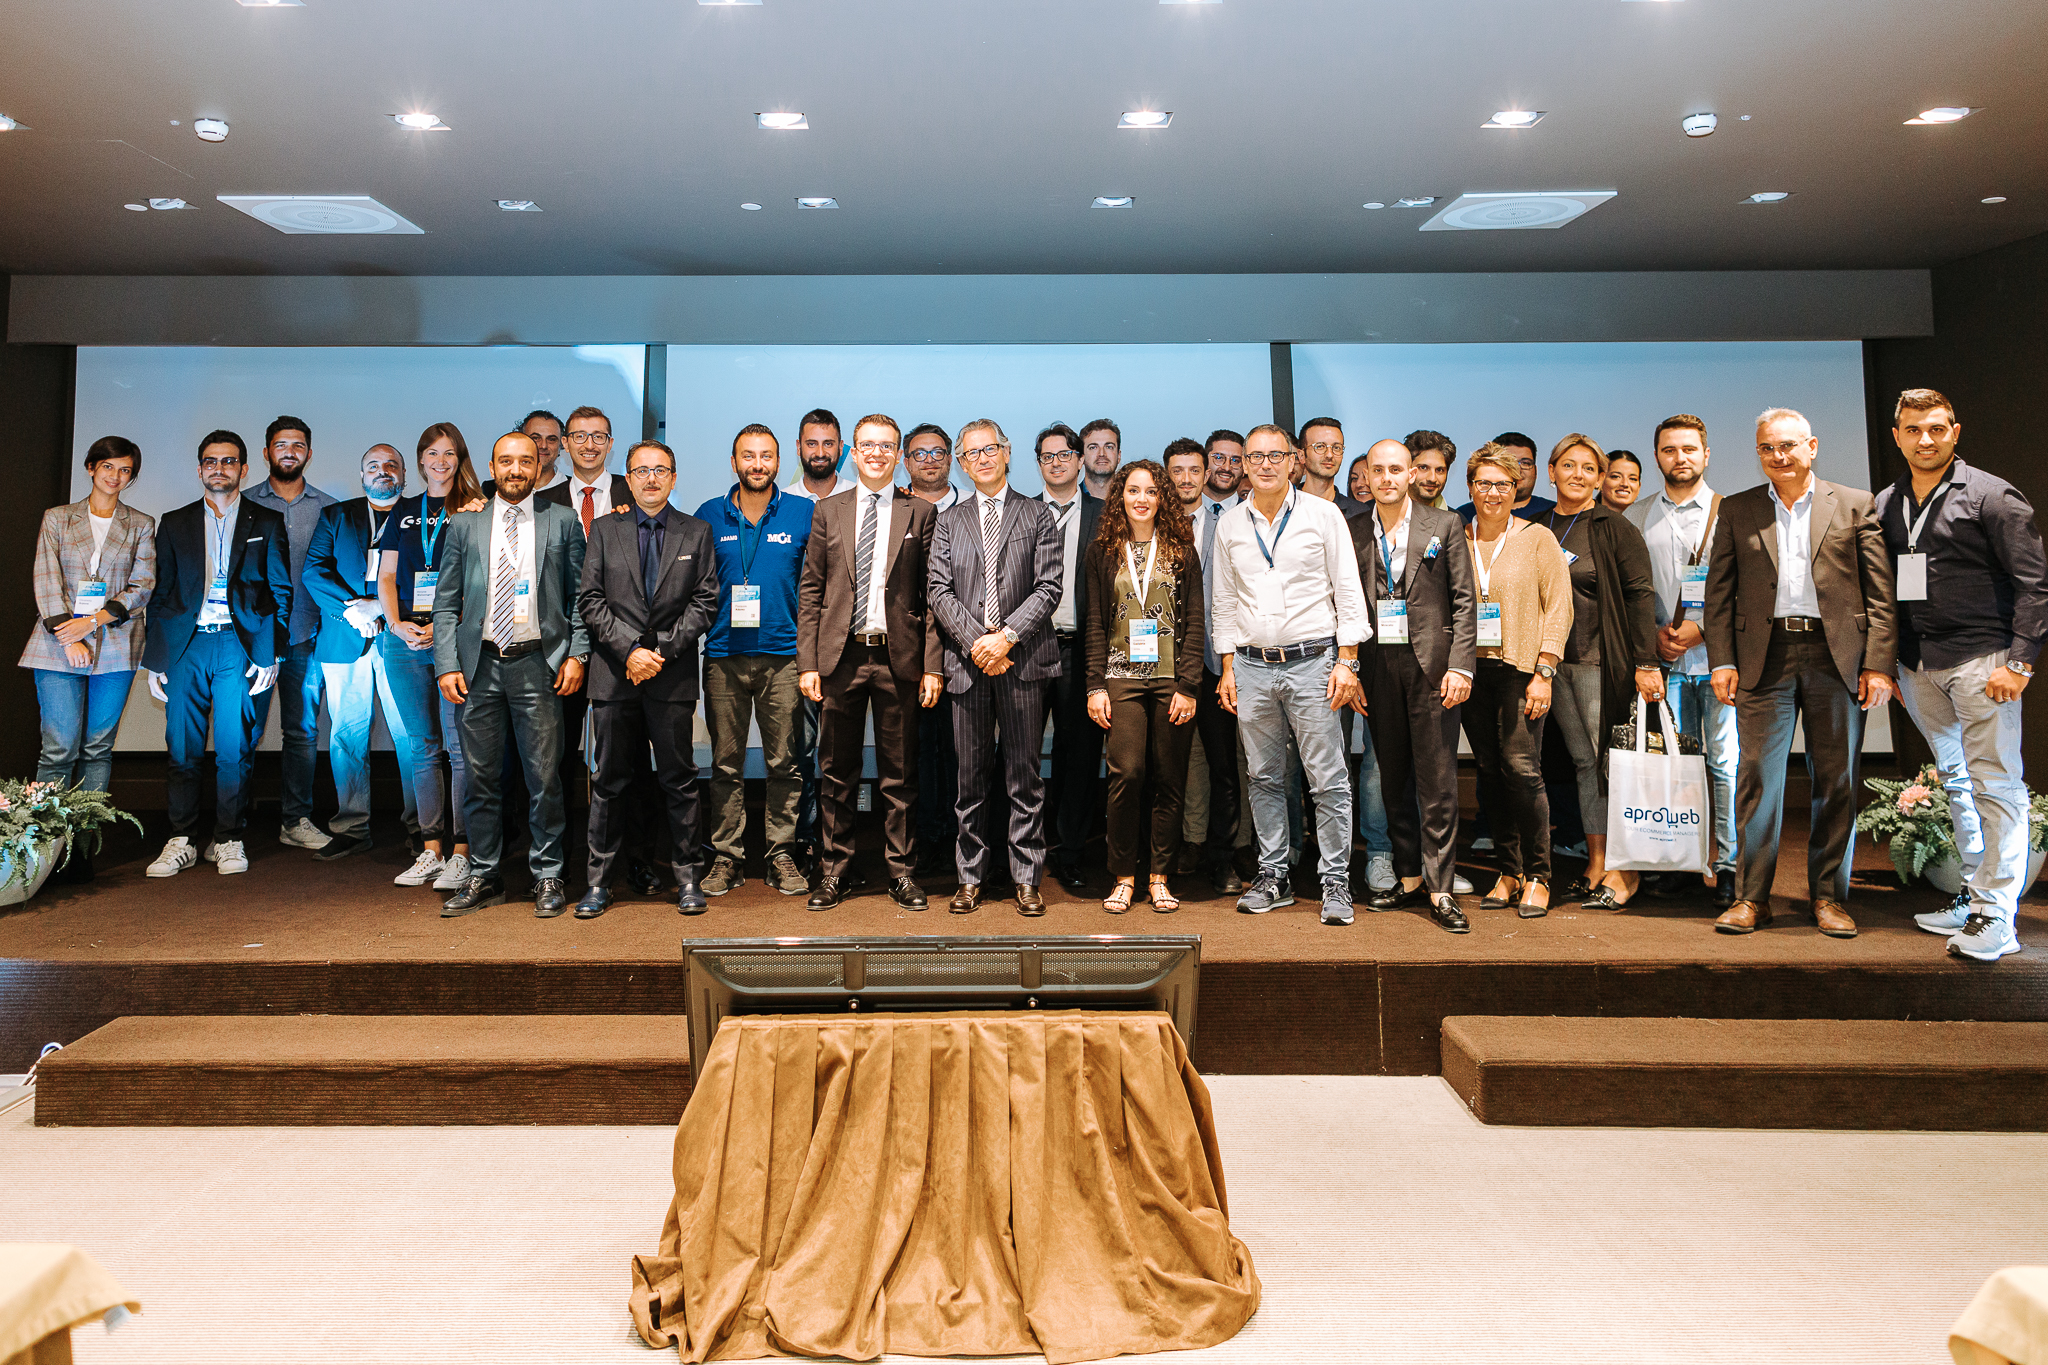 Foto di gruppo durante l'evento ecommerce Webecom 2019